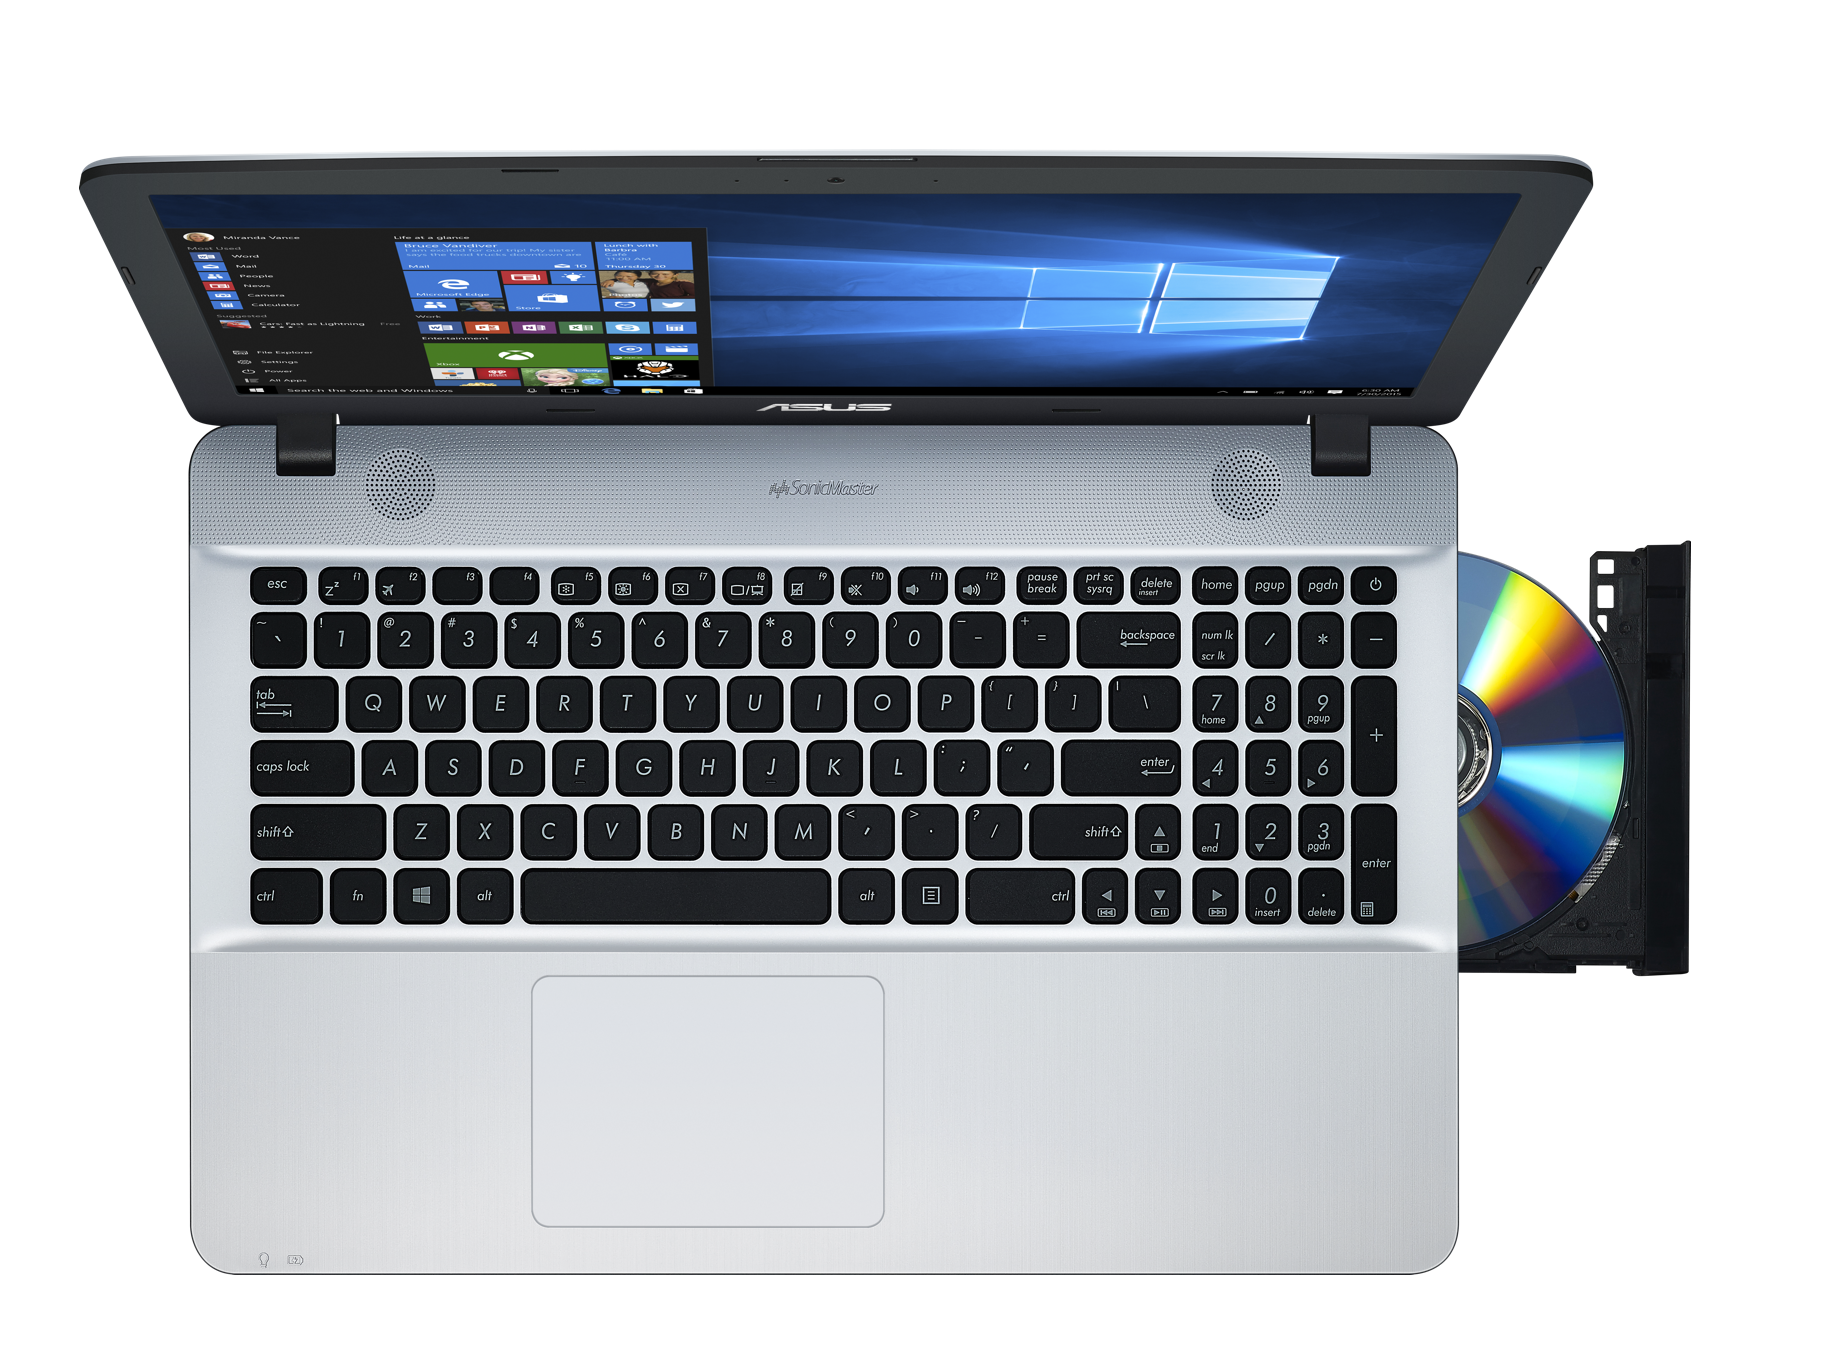 ASUS выпускает недорогой ноутбук VivoBook X541